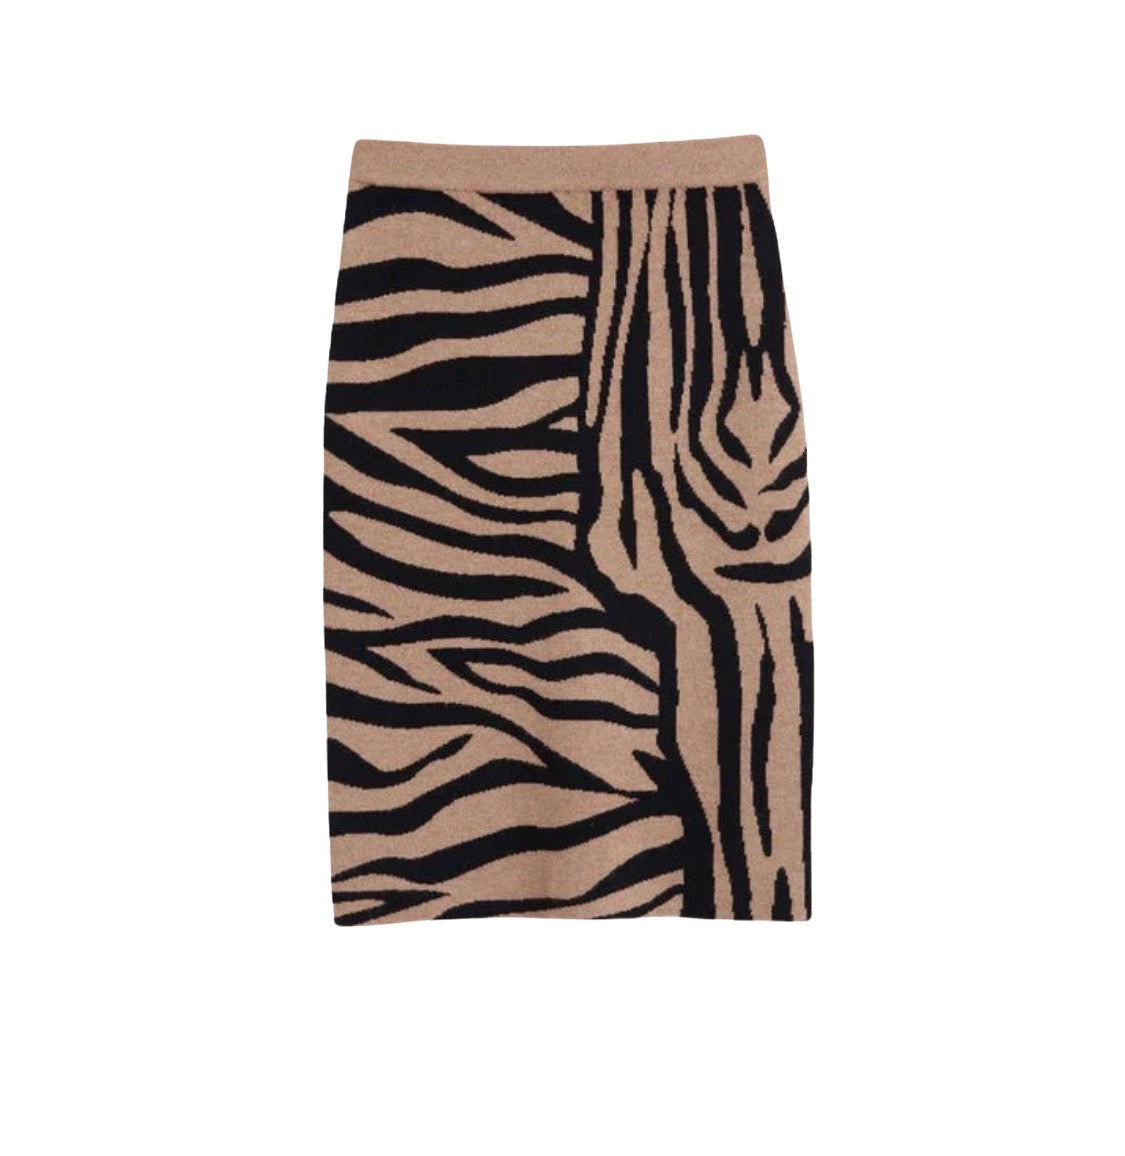 Camel Zebra Skirt